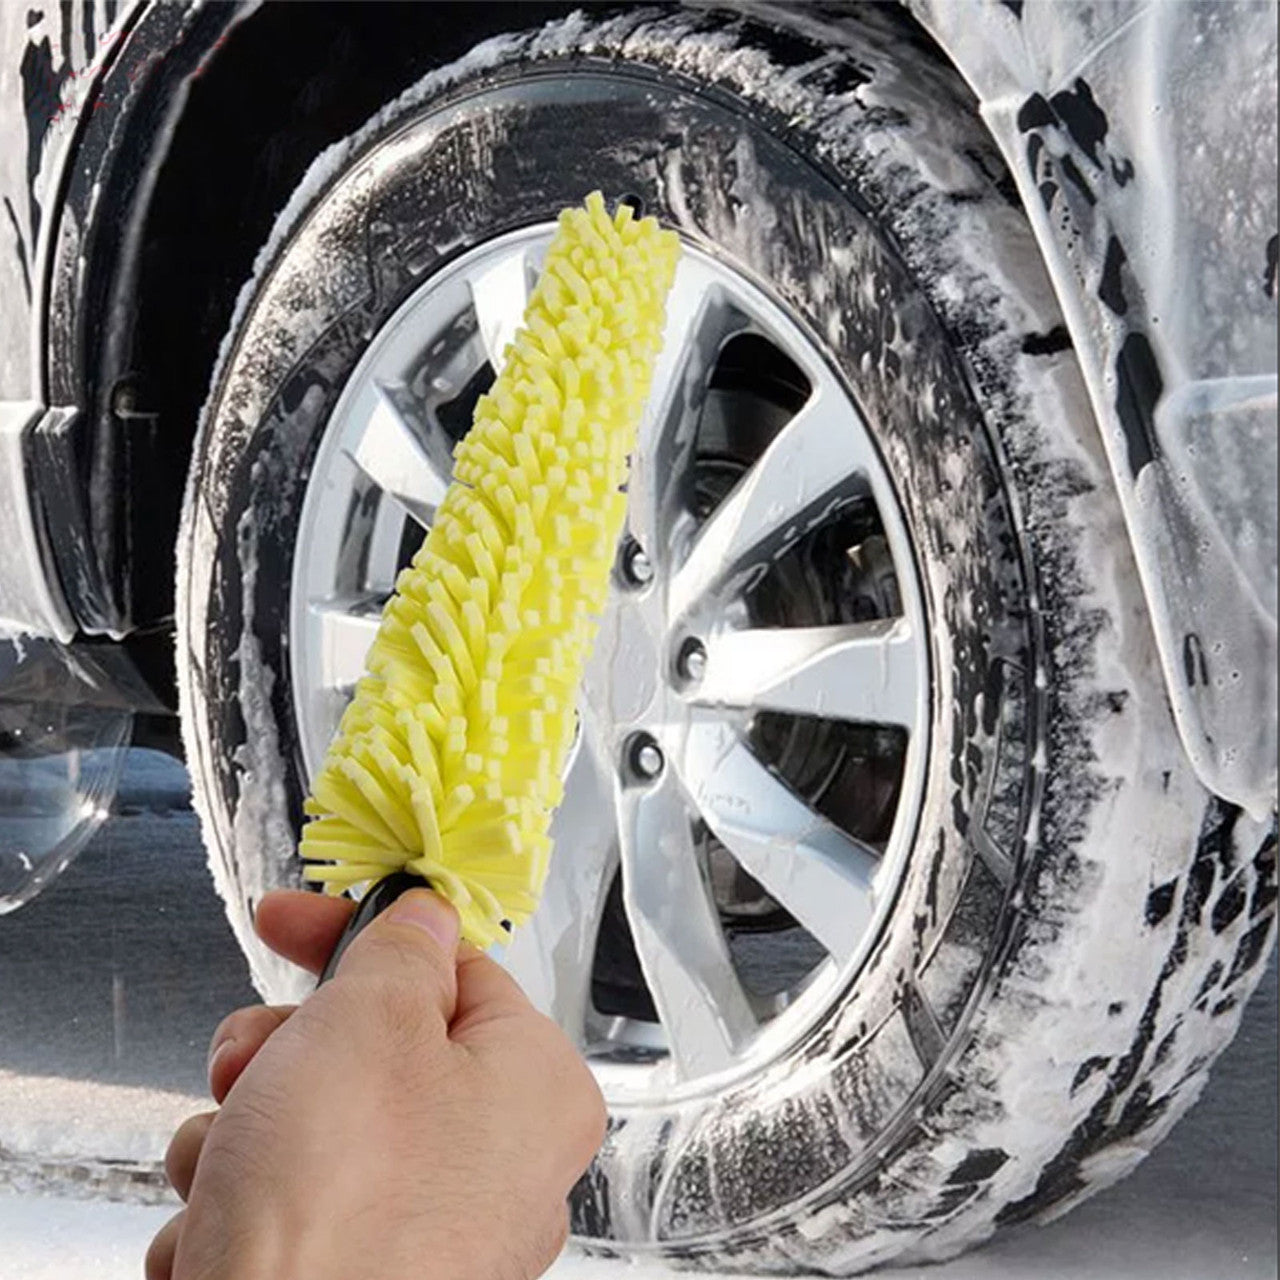 4 Packs Car Detailing Cleaning Brush - Car Wheel Rim Brush Rim Tire Detailing Brush, Plastic Auto Car Wheel Brush Cleaning Brush, Sponges Handle Brush Washing Tools